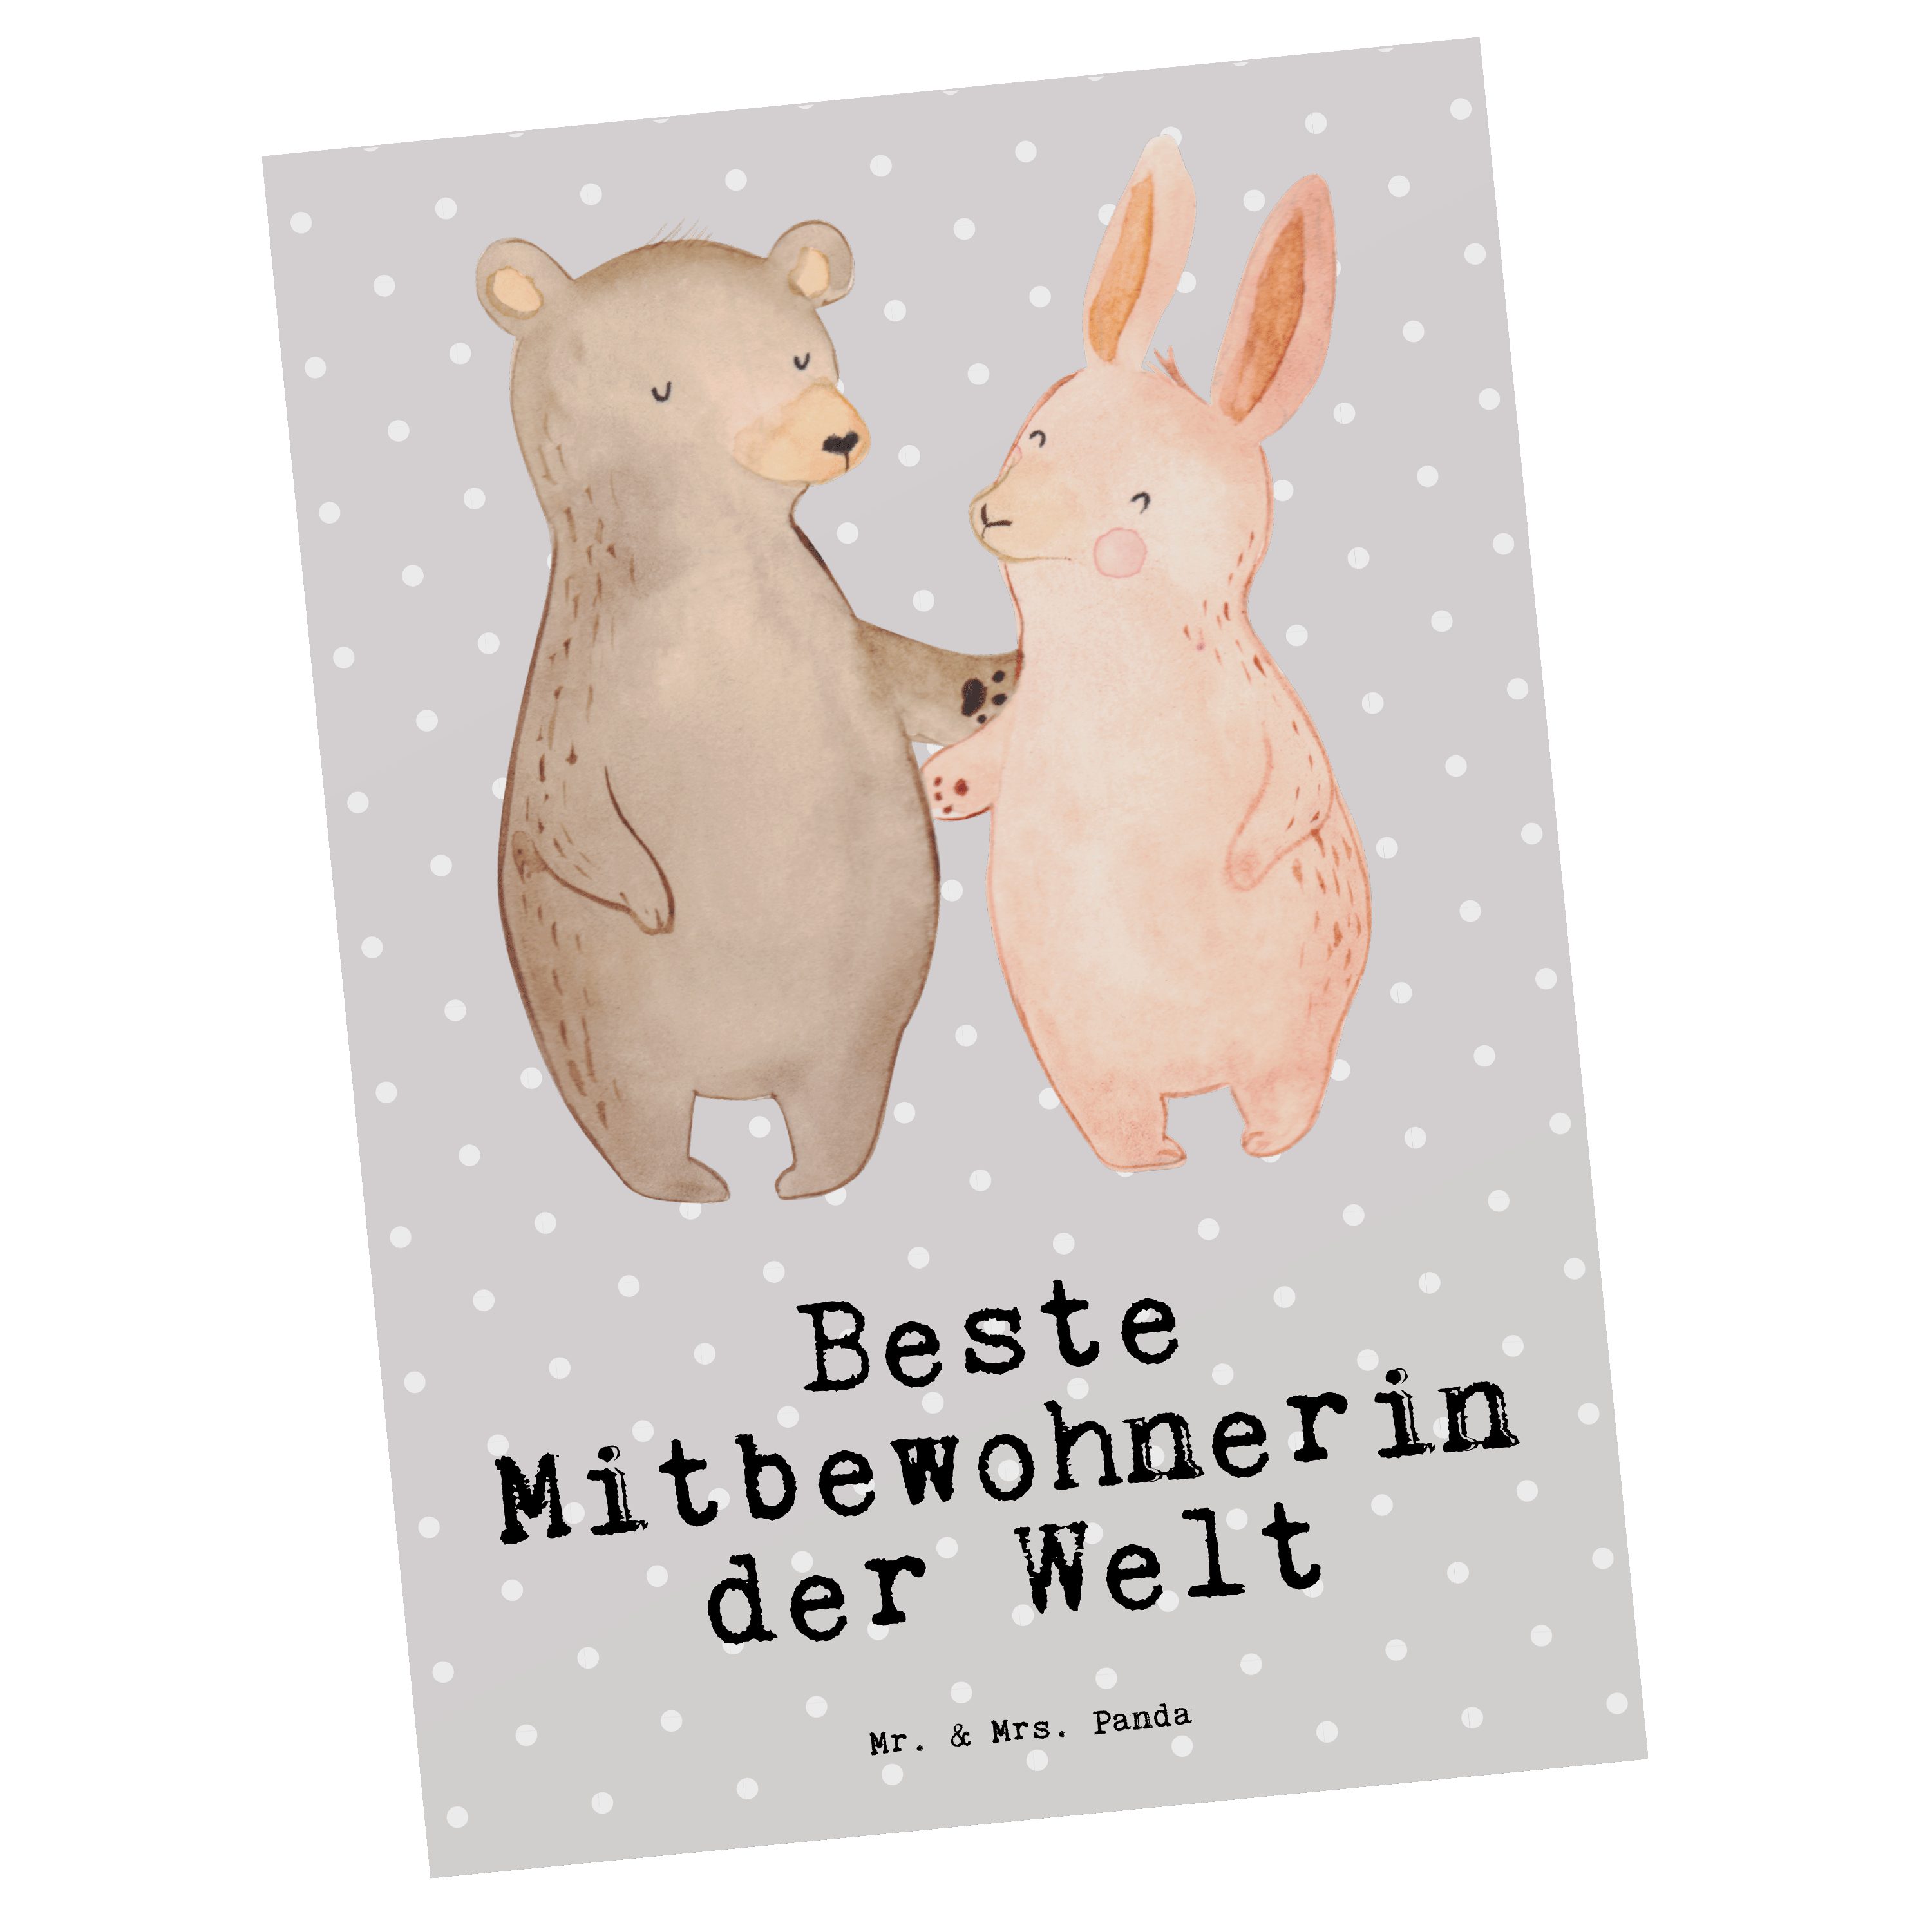 Mr. & Mrs. Panda Postkarte Hase Beste Mitbewohnerin der Welt - Grau Pastell - Geschenk, Grußkart